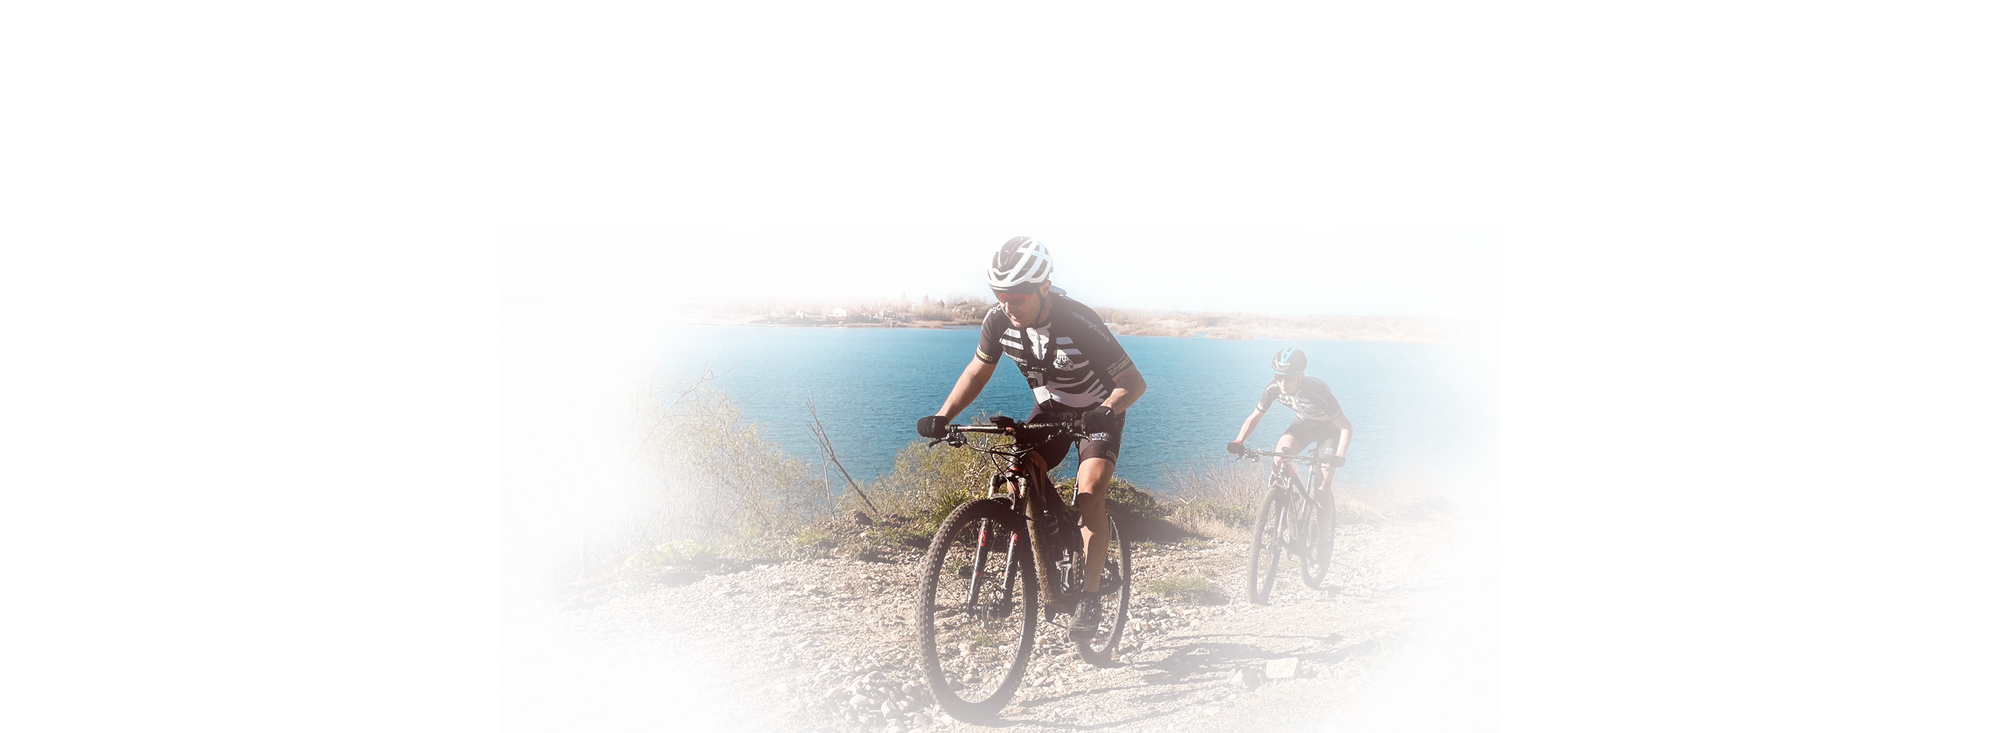 Bike 'n Wine Race - aventura, vinuri si relaxare pe plaja lacului din Ghioroc